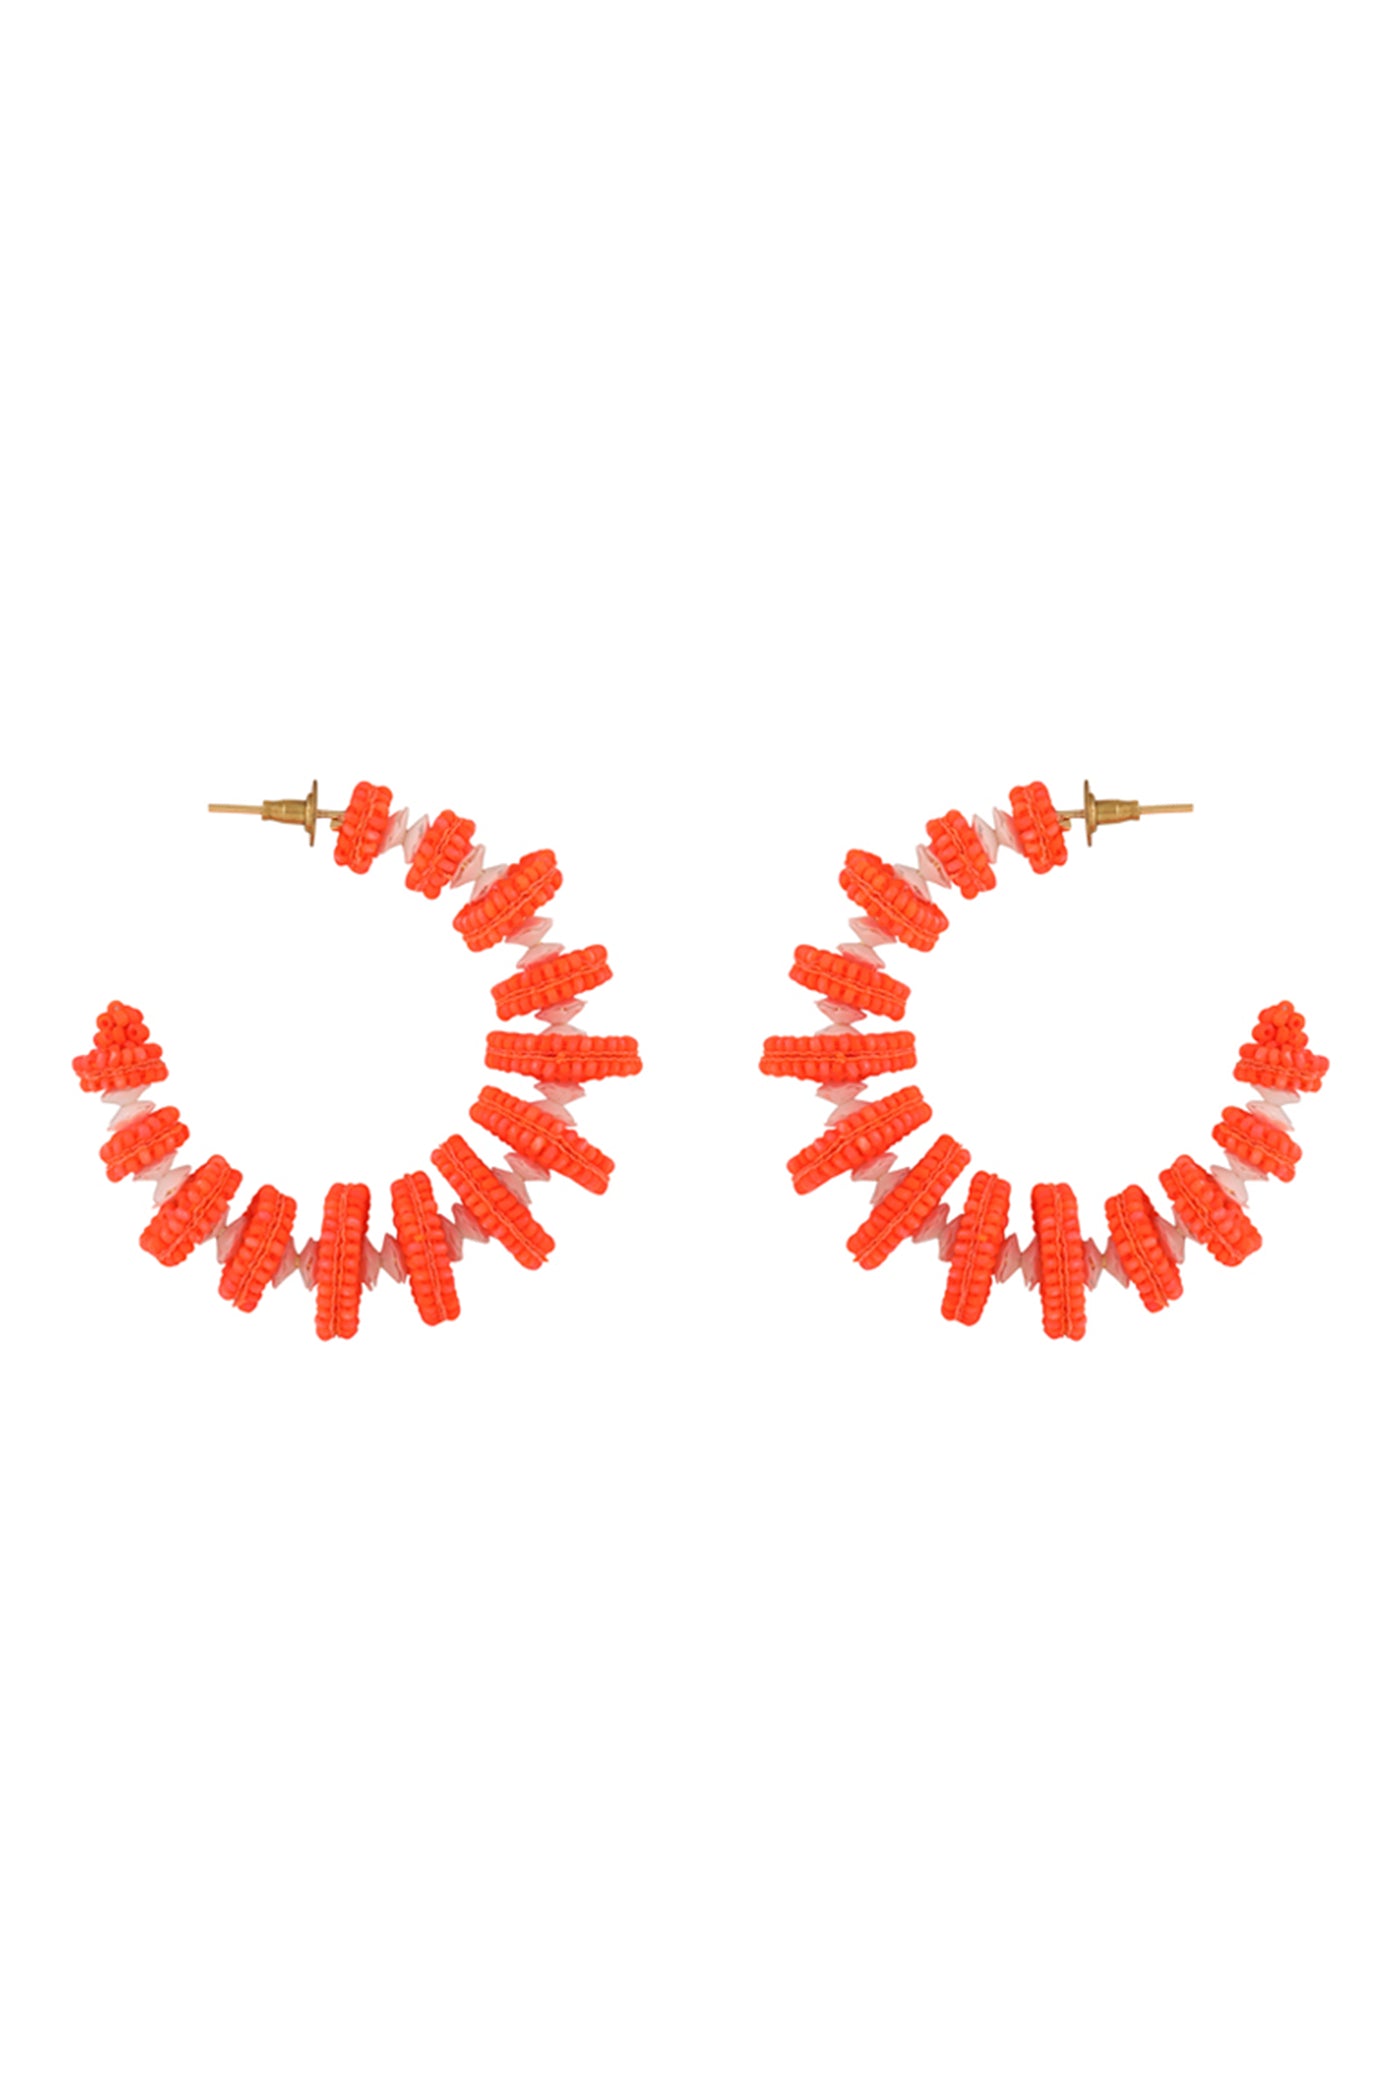 Neon Orange "Deconstruct" Hoop Earrings